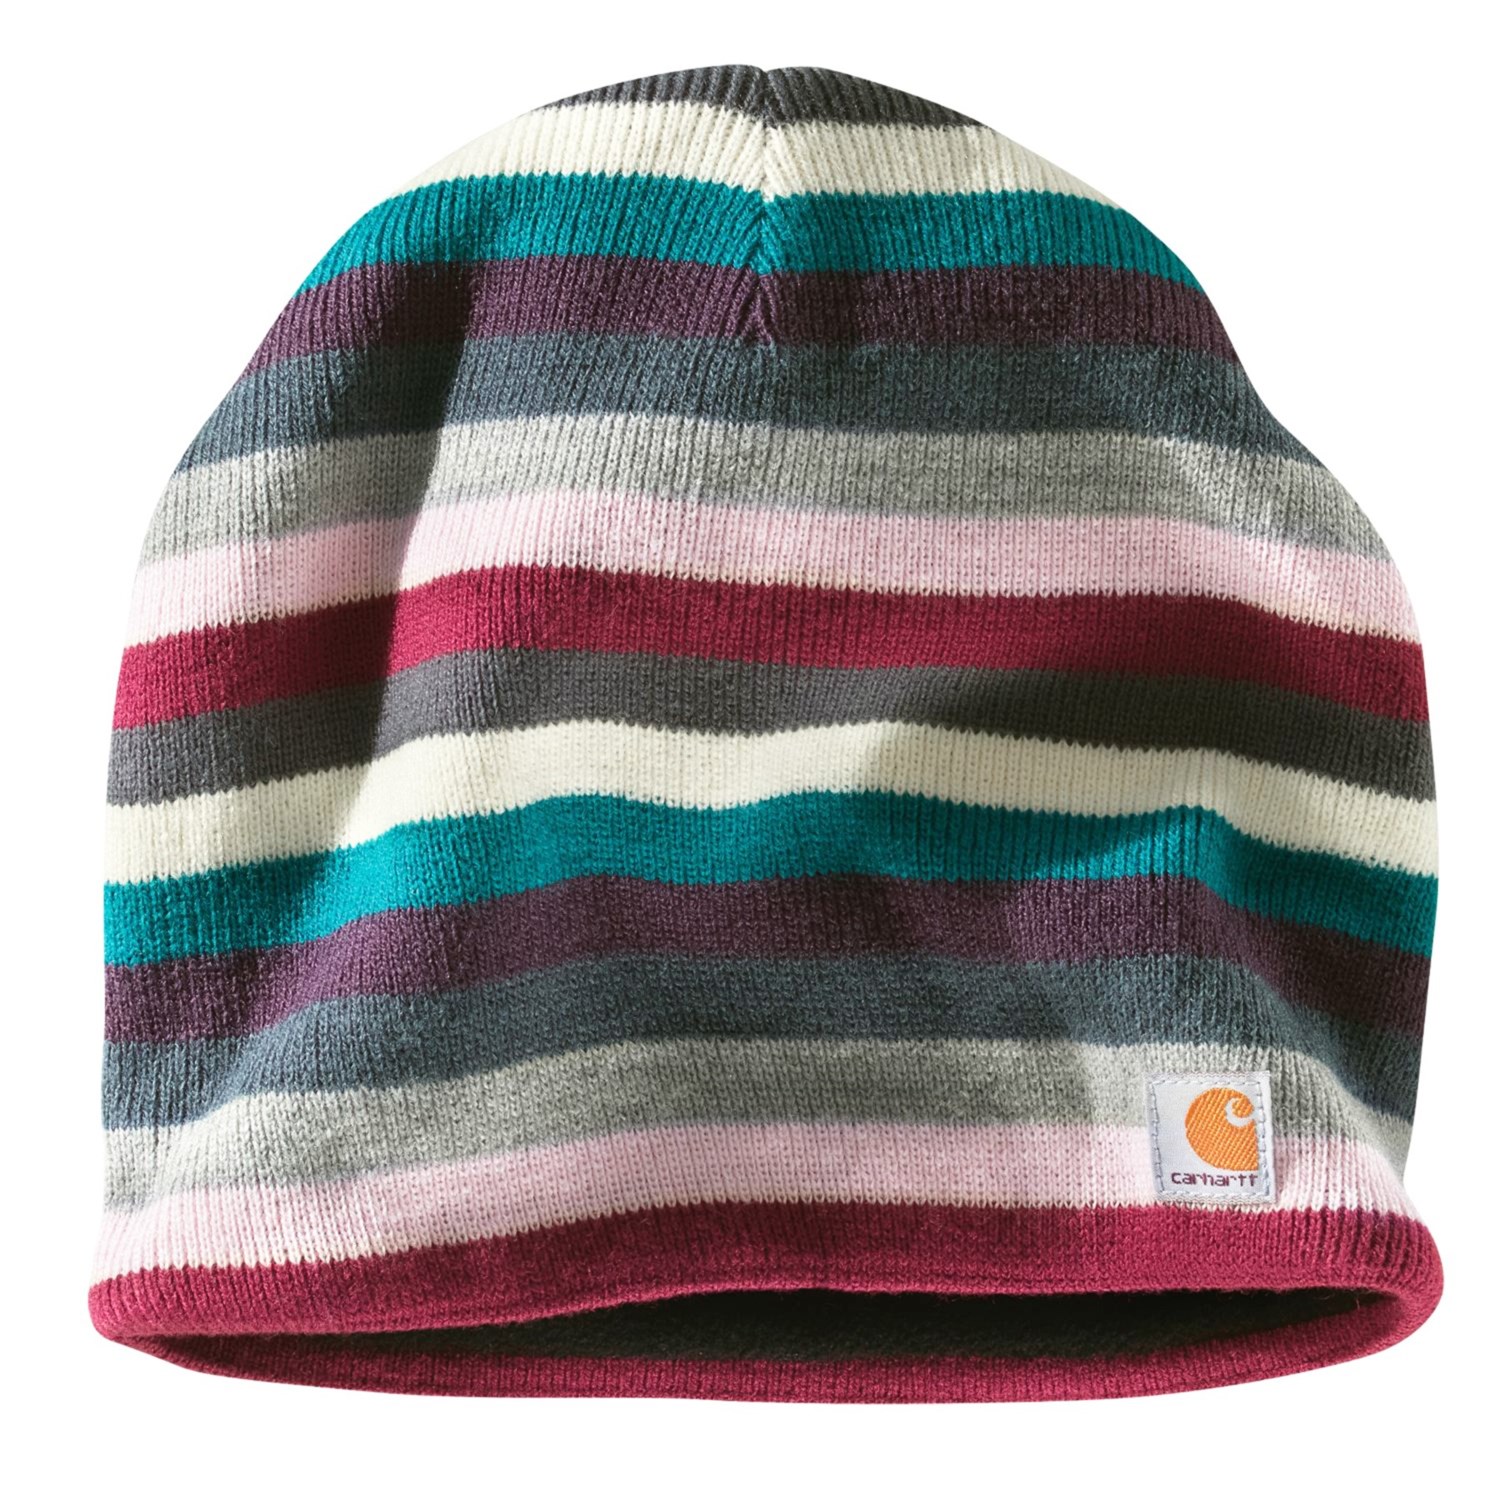 Carhartt Striped Knit Hat - Fleece Lining (For Women) in Coal